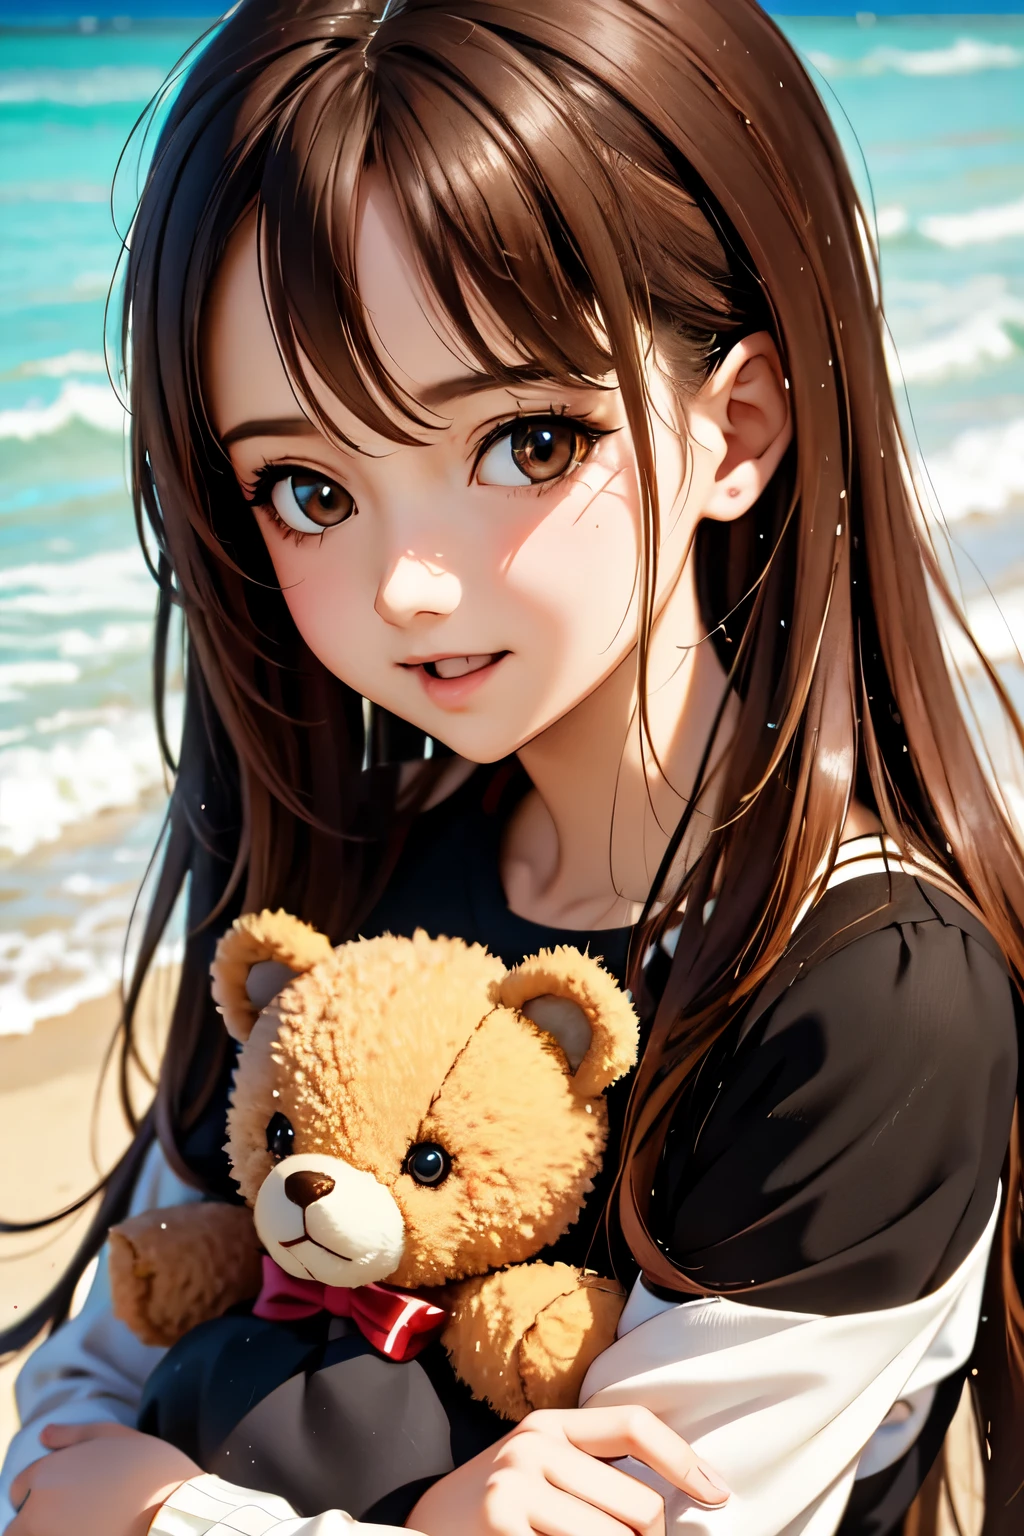 da ist eine Frau die einen Teddybären am Strand hält, Kawaii realistisches Porträt, süßes Anime-Mädchen, Anime-Bild eines süßen Mädchens, Sanfte Anime-CG-Kunst, artwork in the style of guweiz, portrait of süßes Anime-Mädchen, Süßes Porträt, schönes Anime-Porträt, schönes Anime-Mädchen, süßes Anime-Mädchen portrait, realistischer Anime-3D-Stil